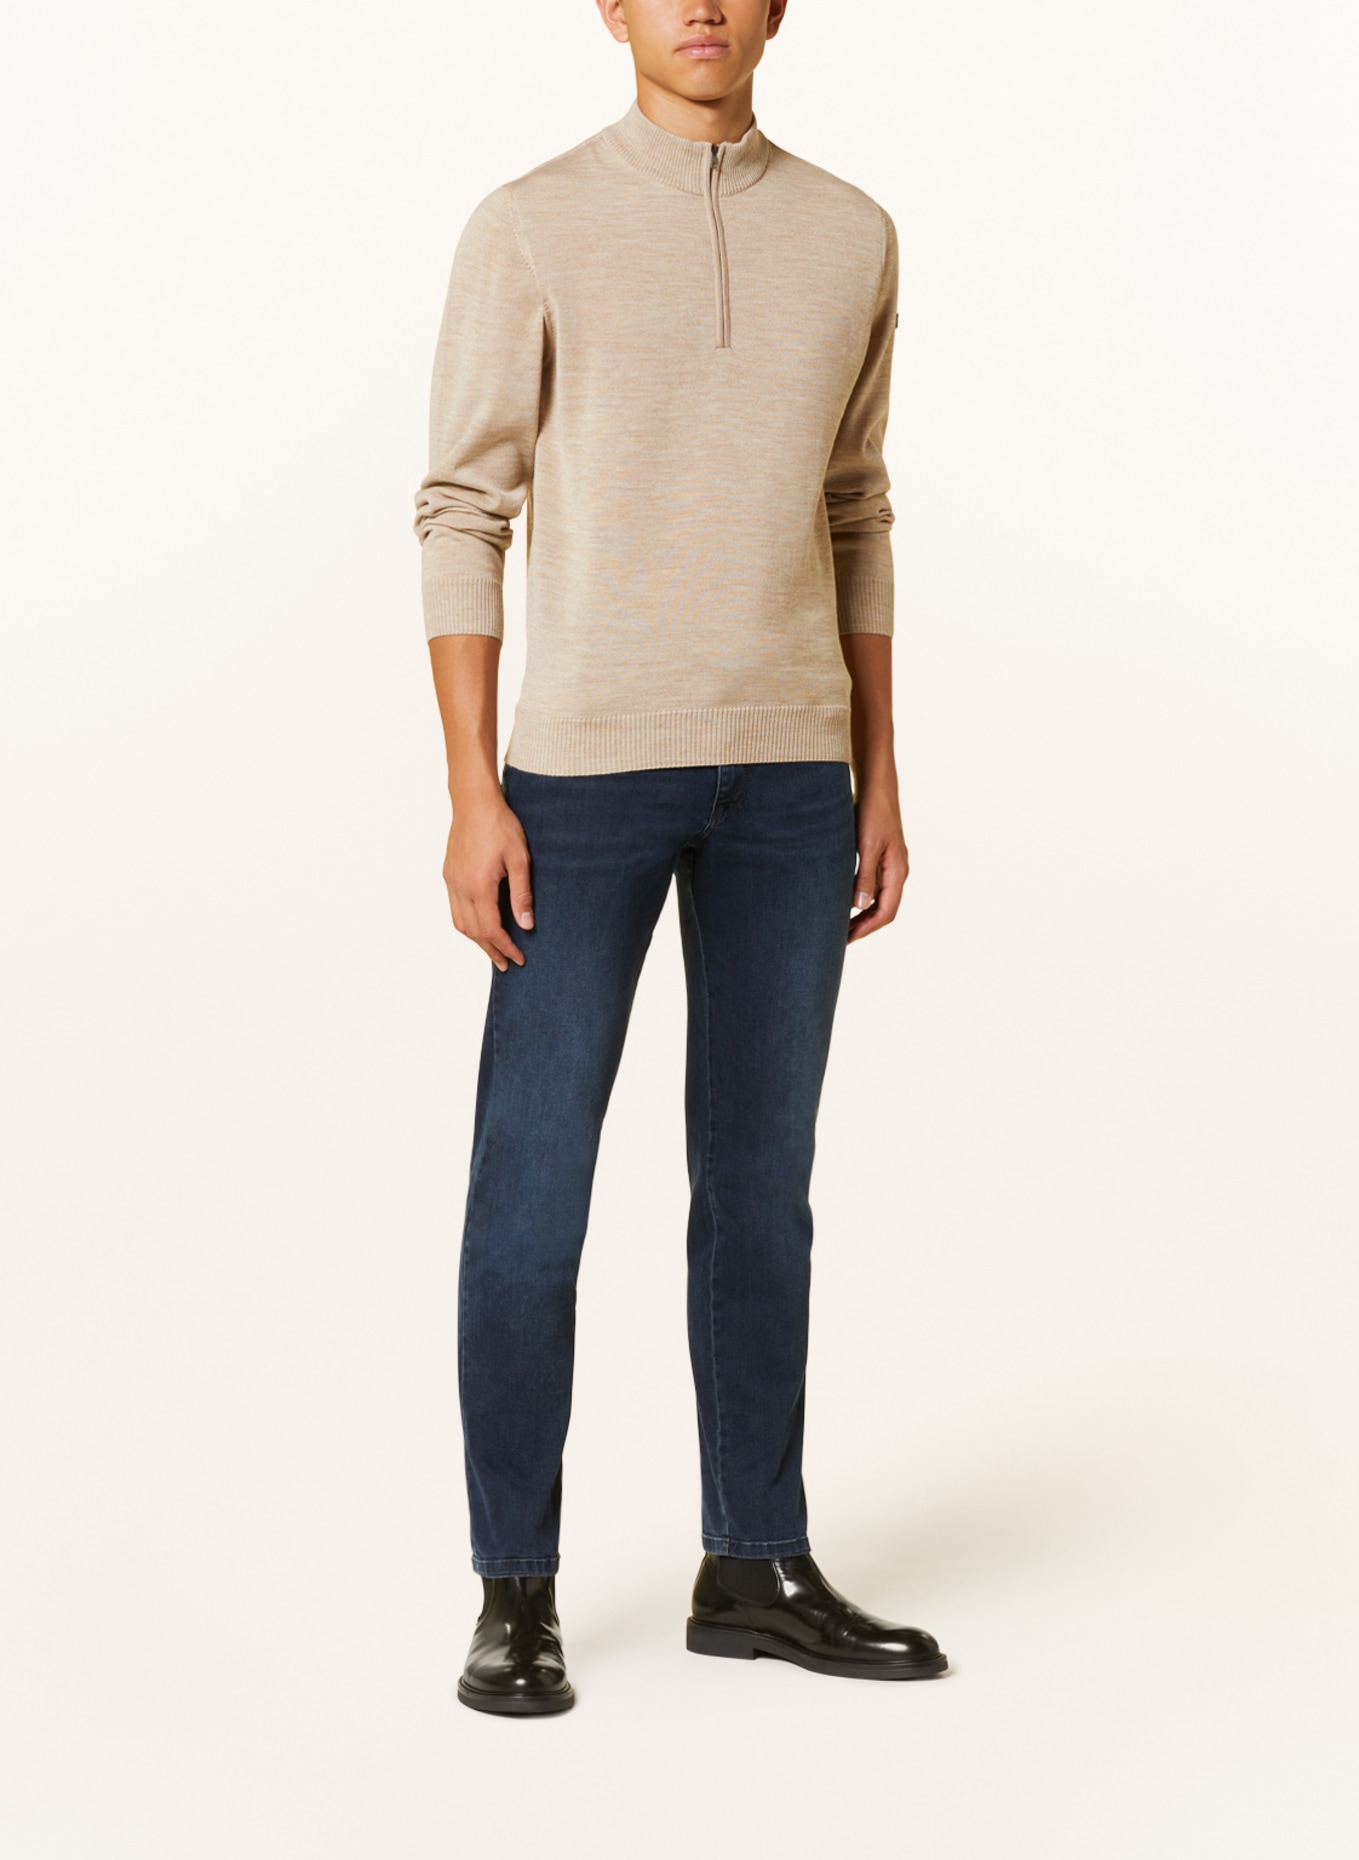 MAERZ MUENCHEN Half-zip sweater, Color: BEIGE (Image 2)